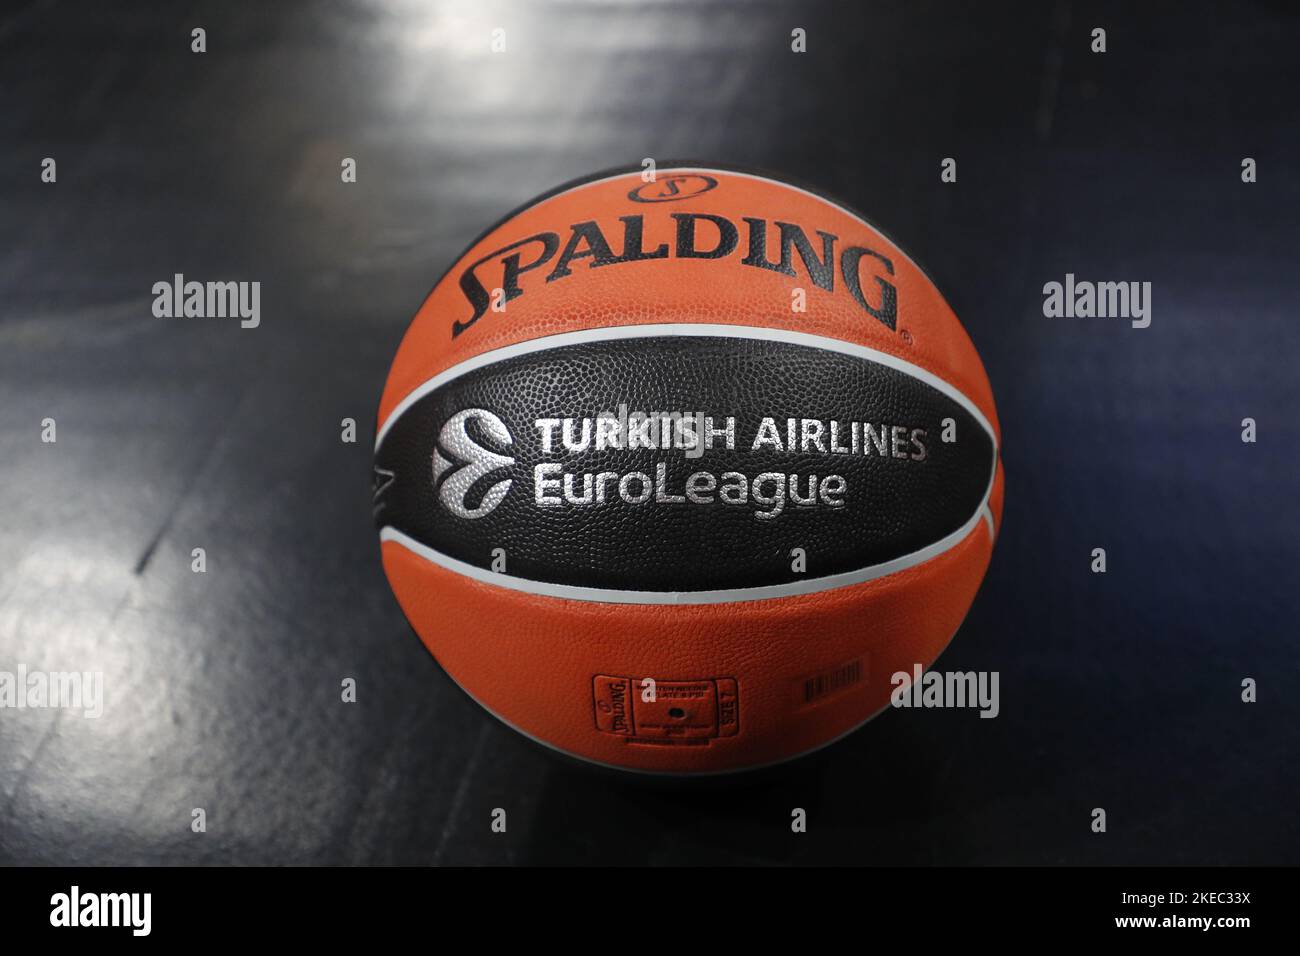 10 novembre 2022, Rome, France: Ballon de match de l'Euroligue pendant le  match de basket-ball Euroligue des compagnies aériennes turques entre LDLC  ASVEL Villeurbanne et Zalgiris Kaunas sur 10 novembre 2022 à